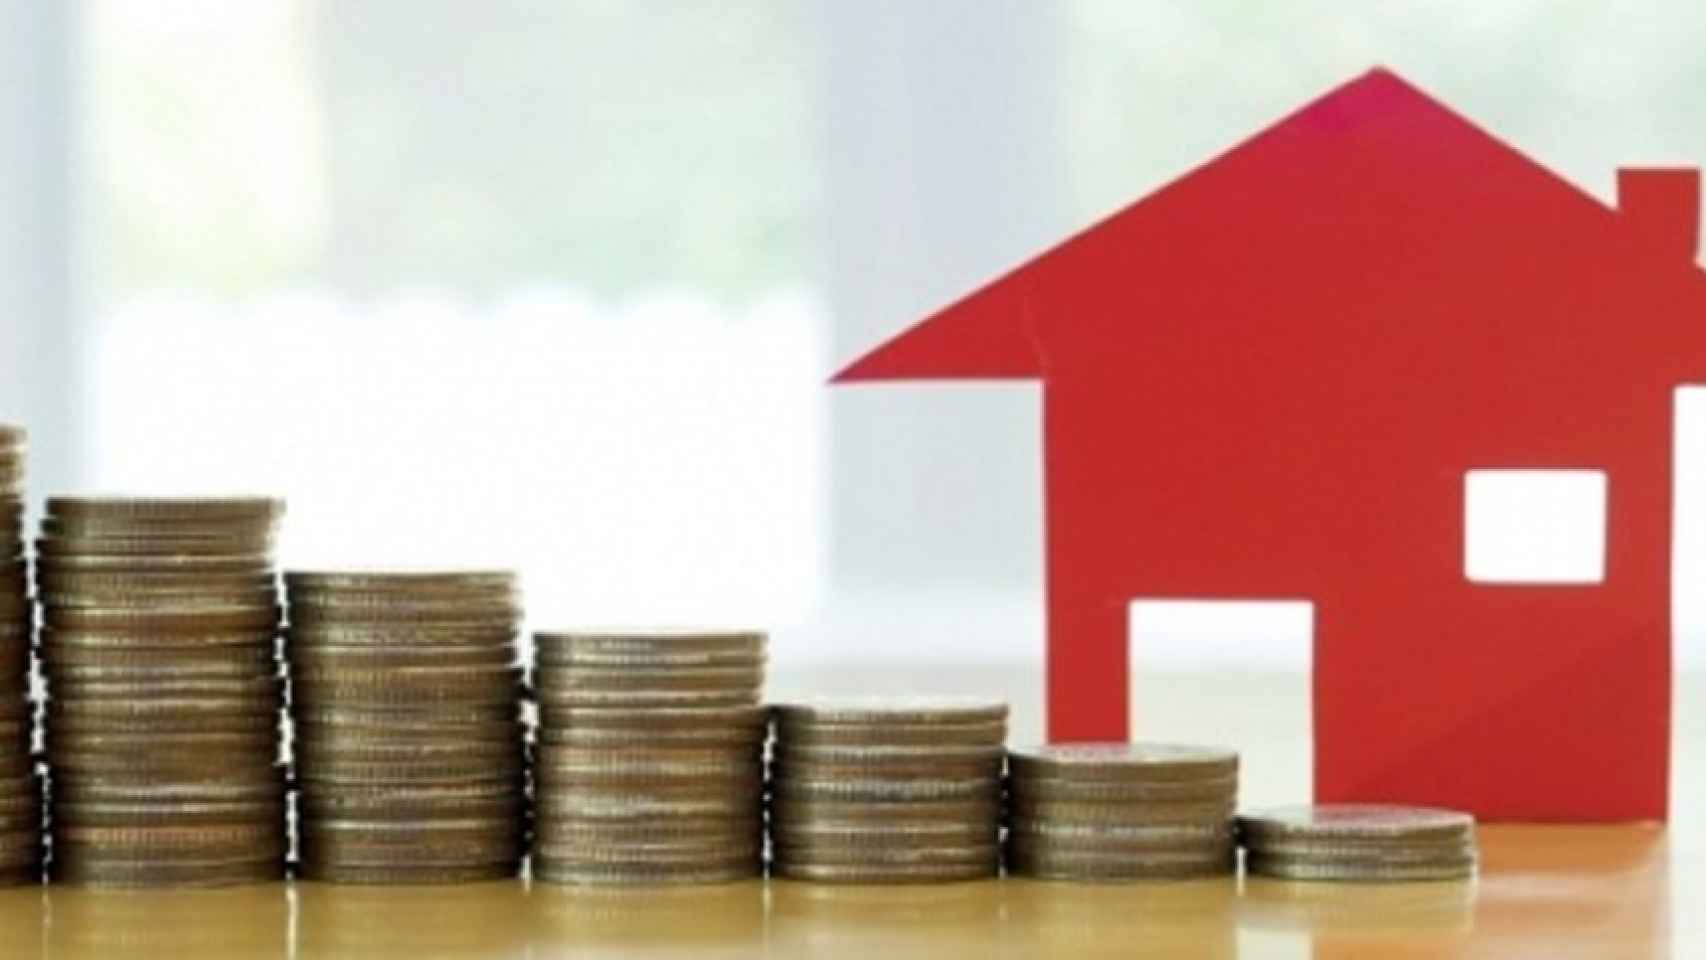 Variedad en hipotecas a tipo fijo: del 1,75% al 3,10%